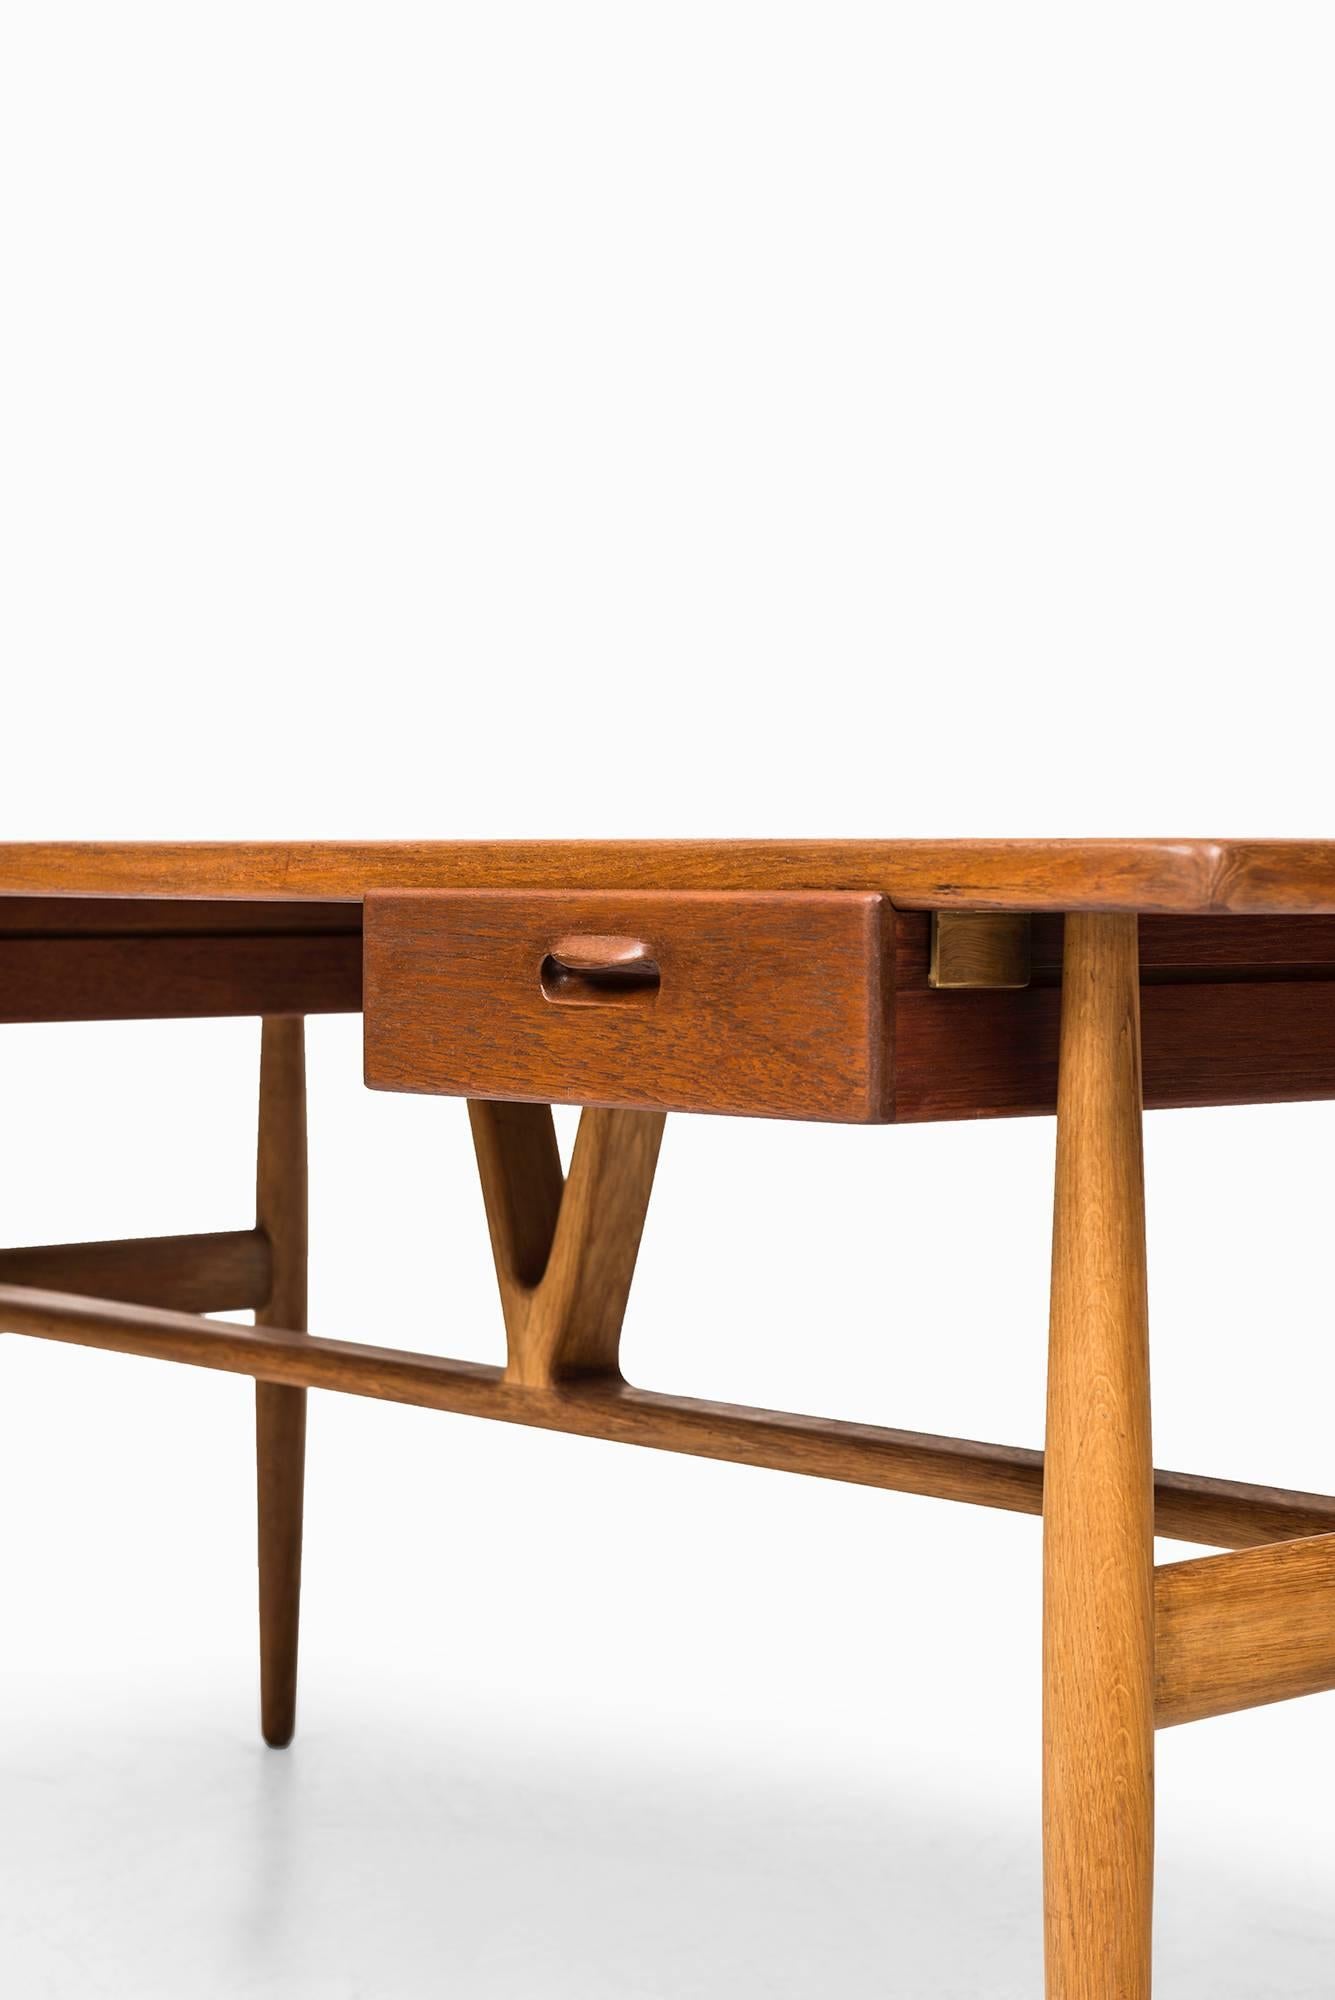 Hans Wegner Wishbone / Model JH 563 Desk by Johannes Hansen in Denmark 1